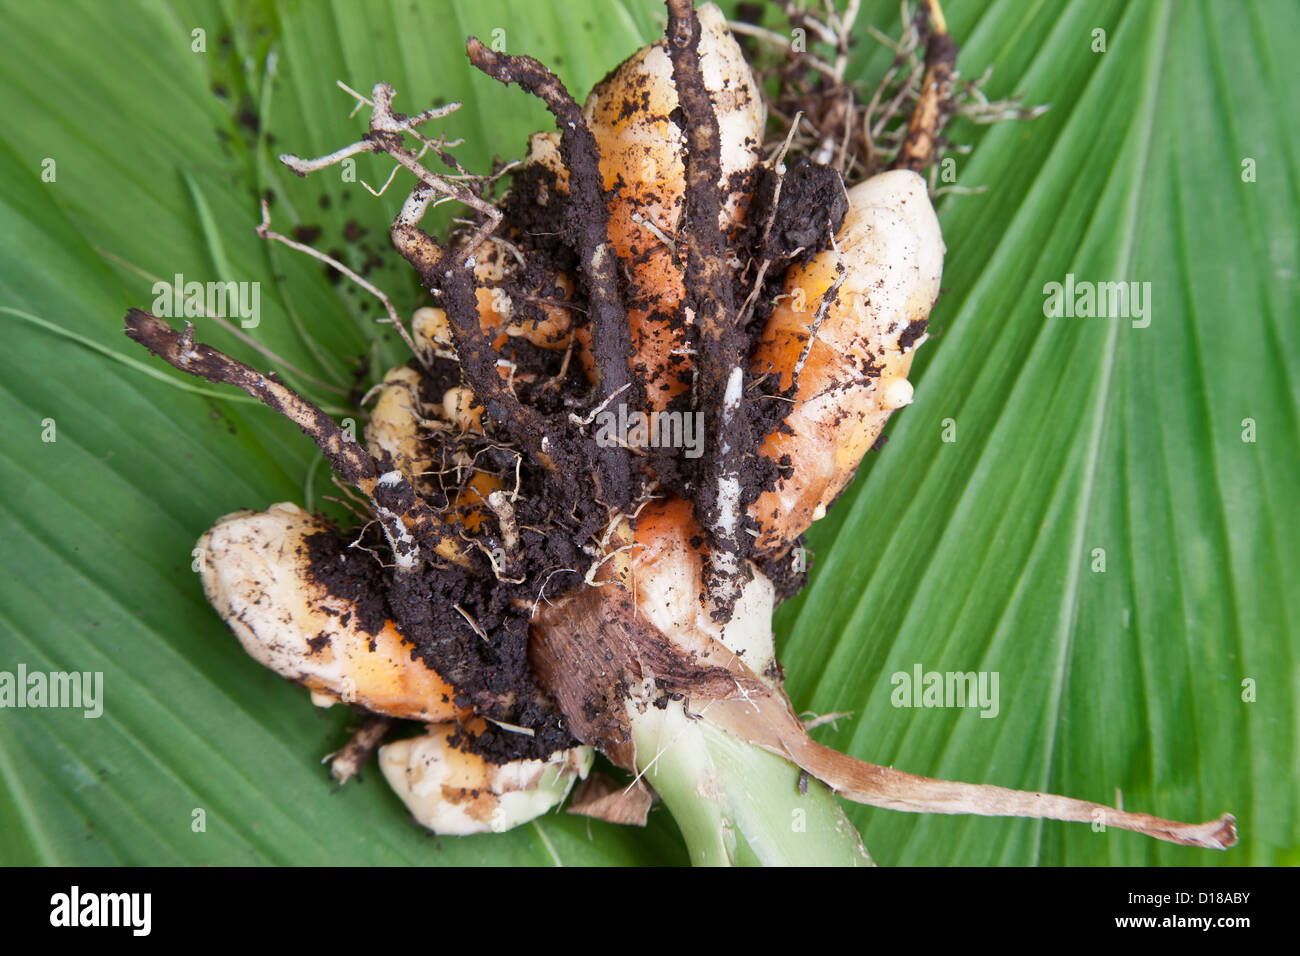 Harvested Curcuma longa rhizome. Stock Photo